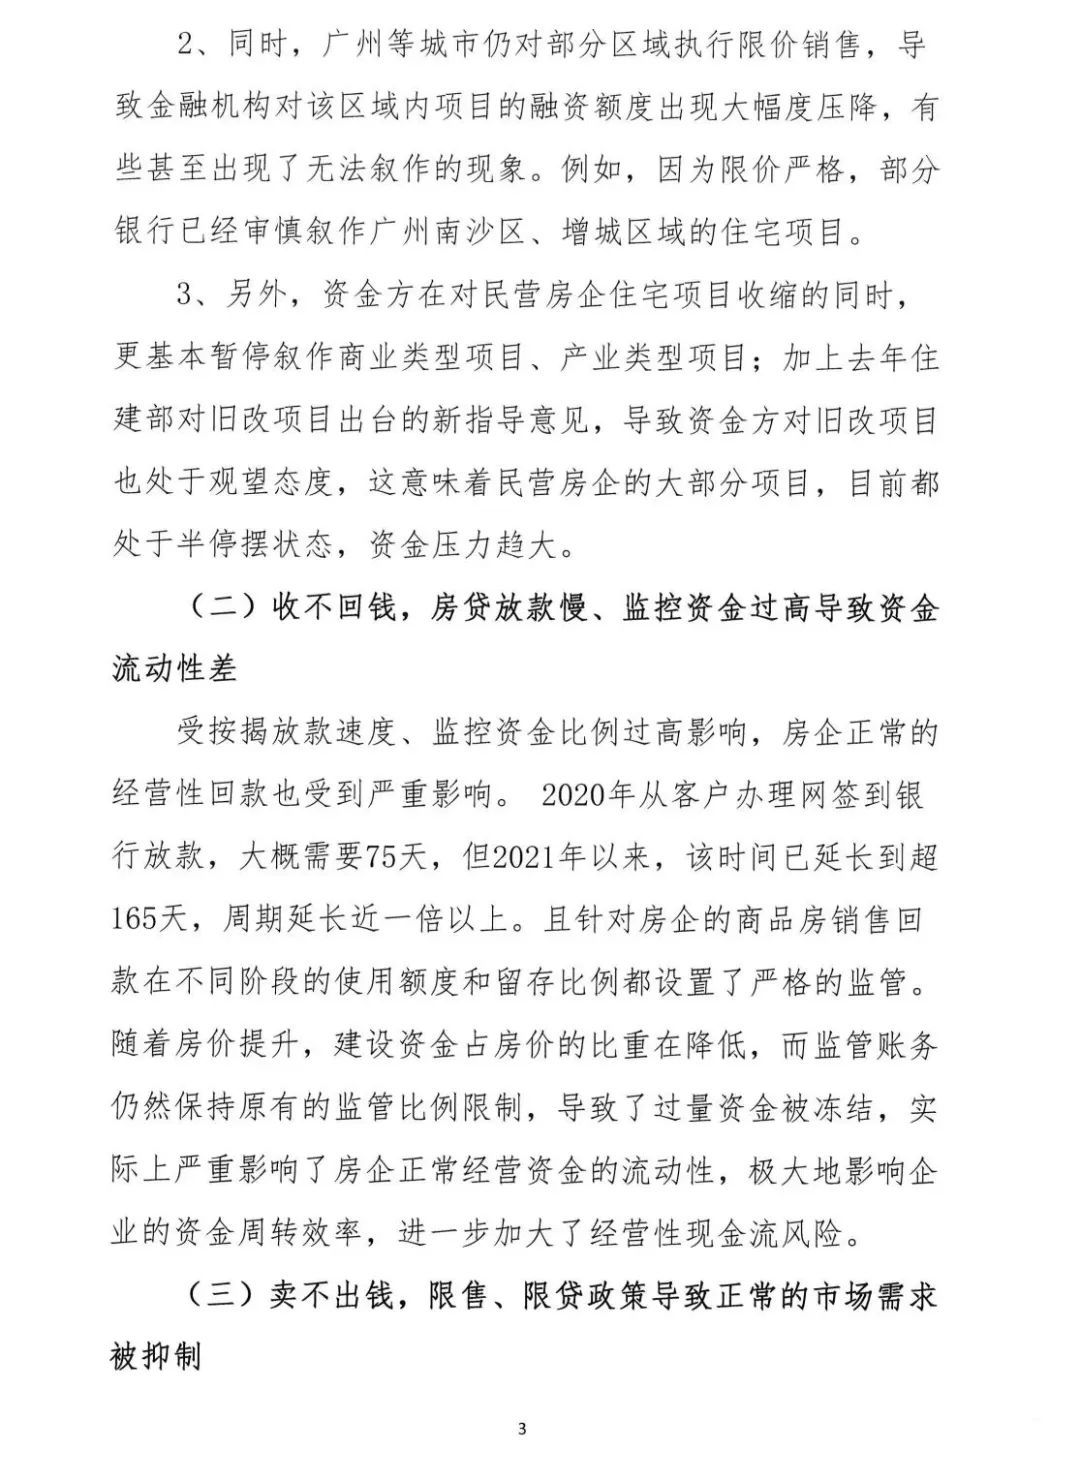 2022年6月6日，广东省地产商会向省住建厅递交了一份文件《关于促进房地产业平稳健康发展的意见和建议》粵地会〔2021〕1号。3.png